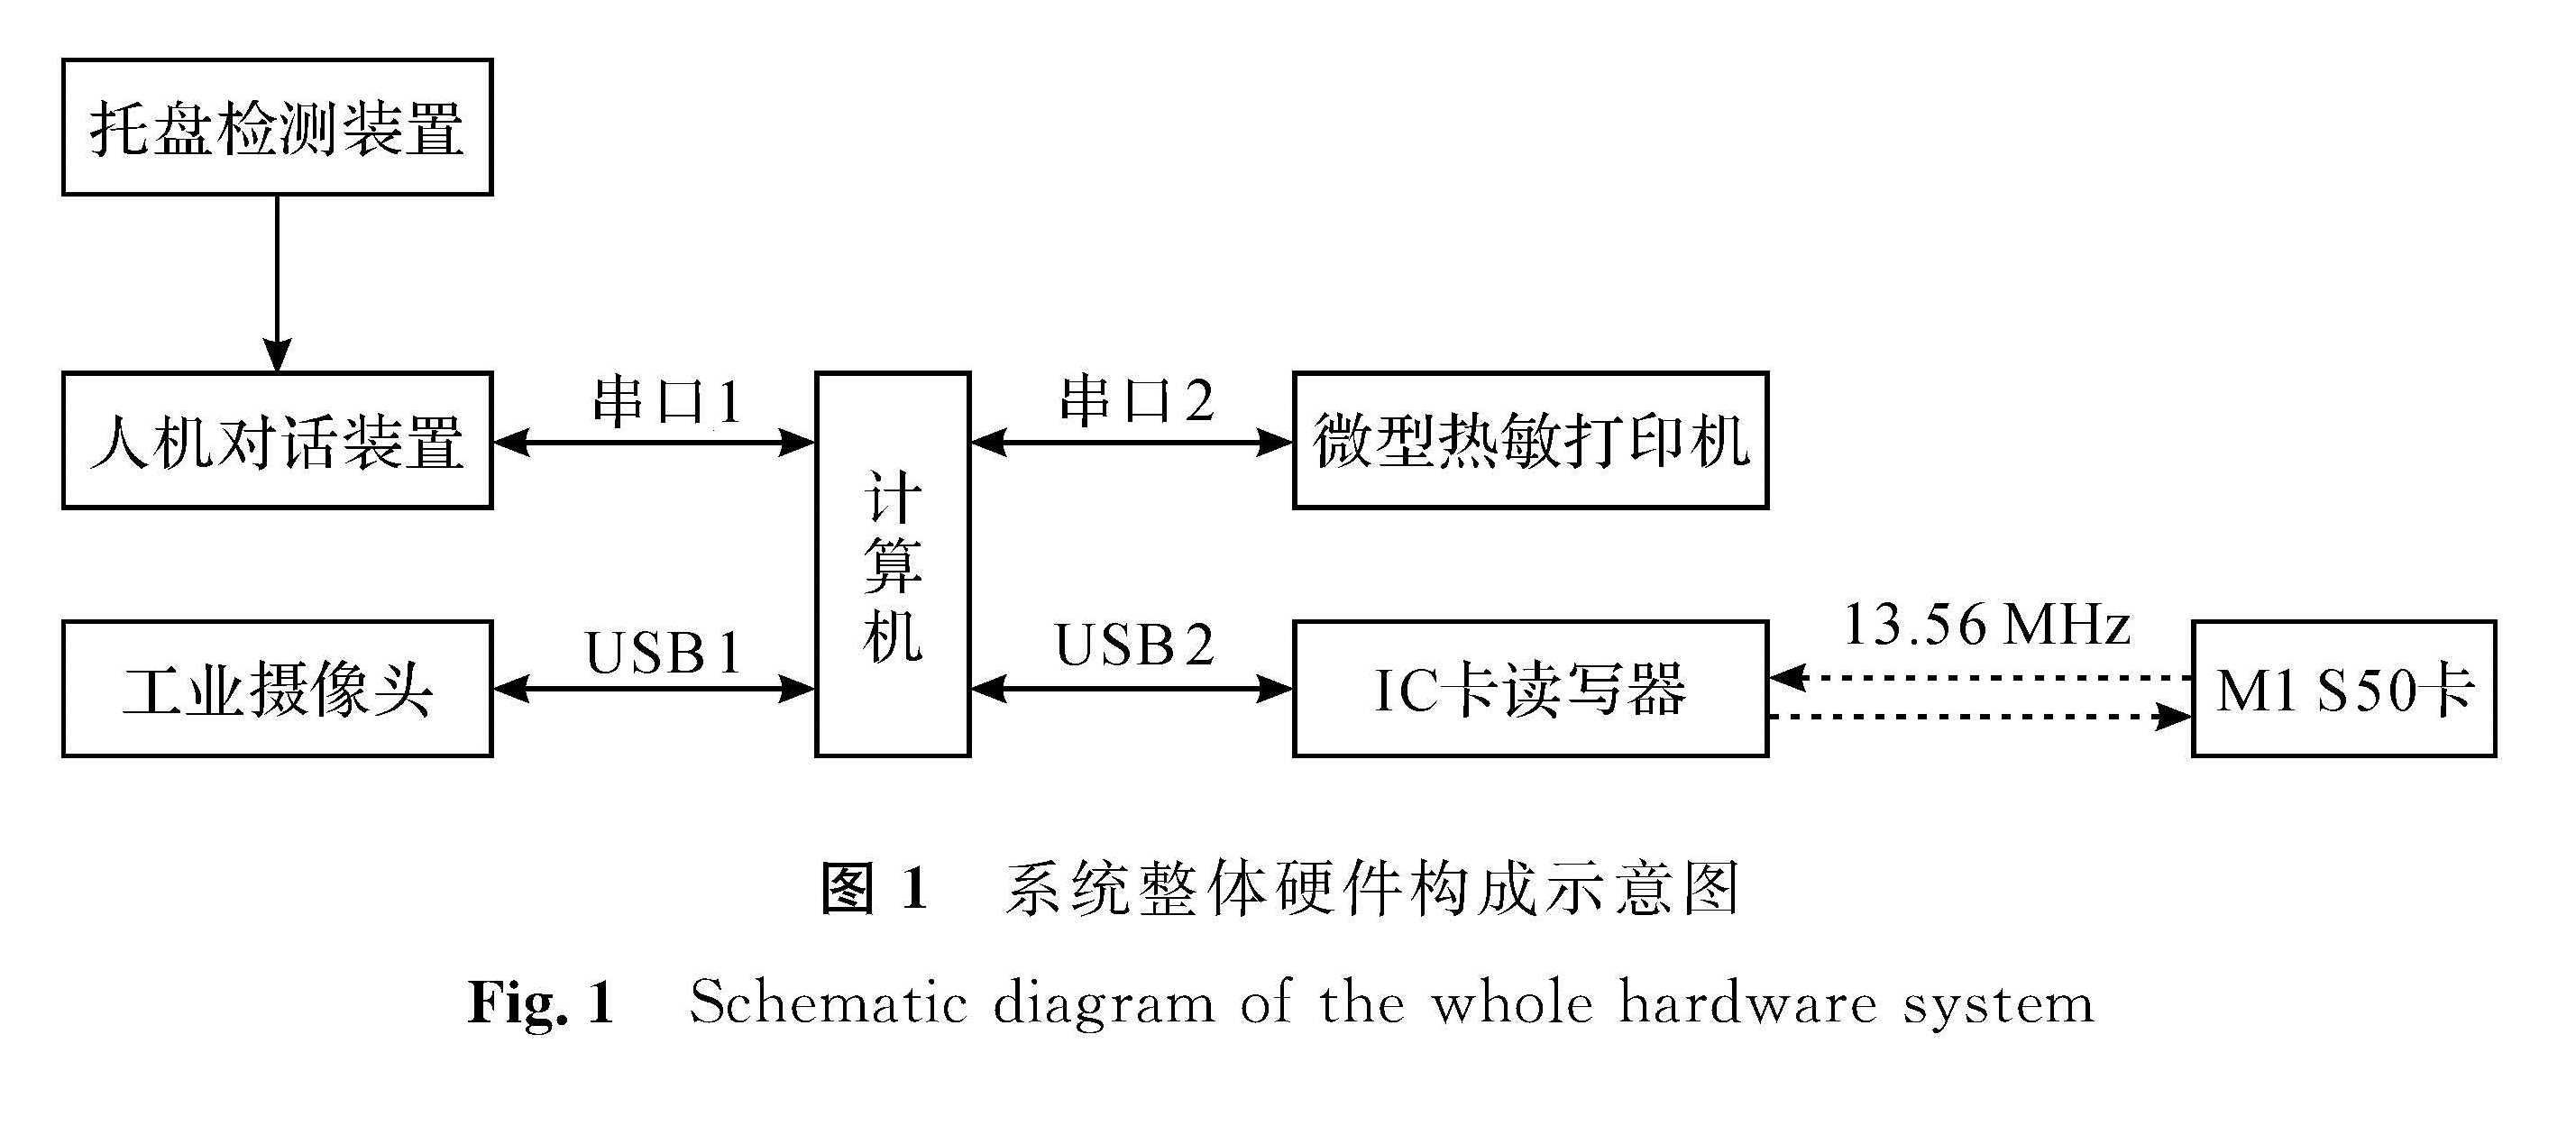 图1 系统整体硬件构成示意图<br/>Fig.1 Schematic diagram of the whole hardware system